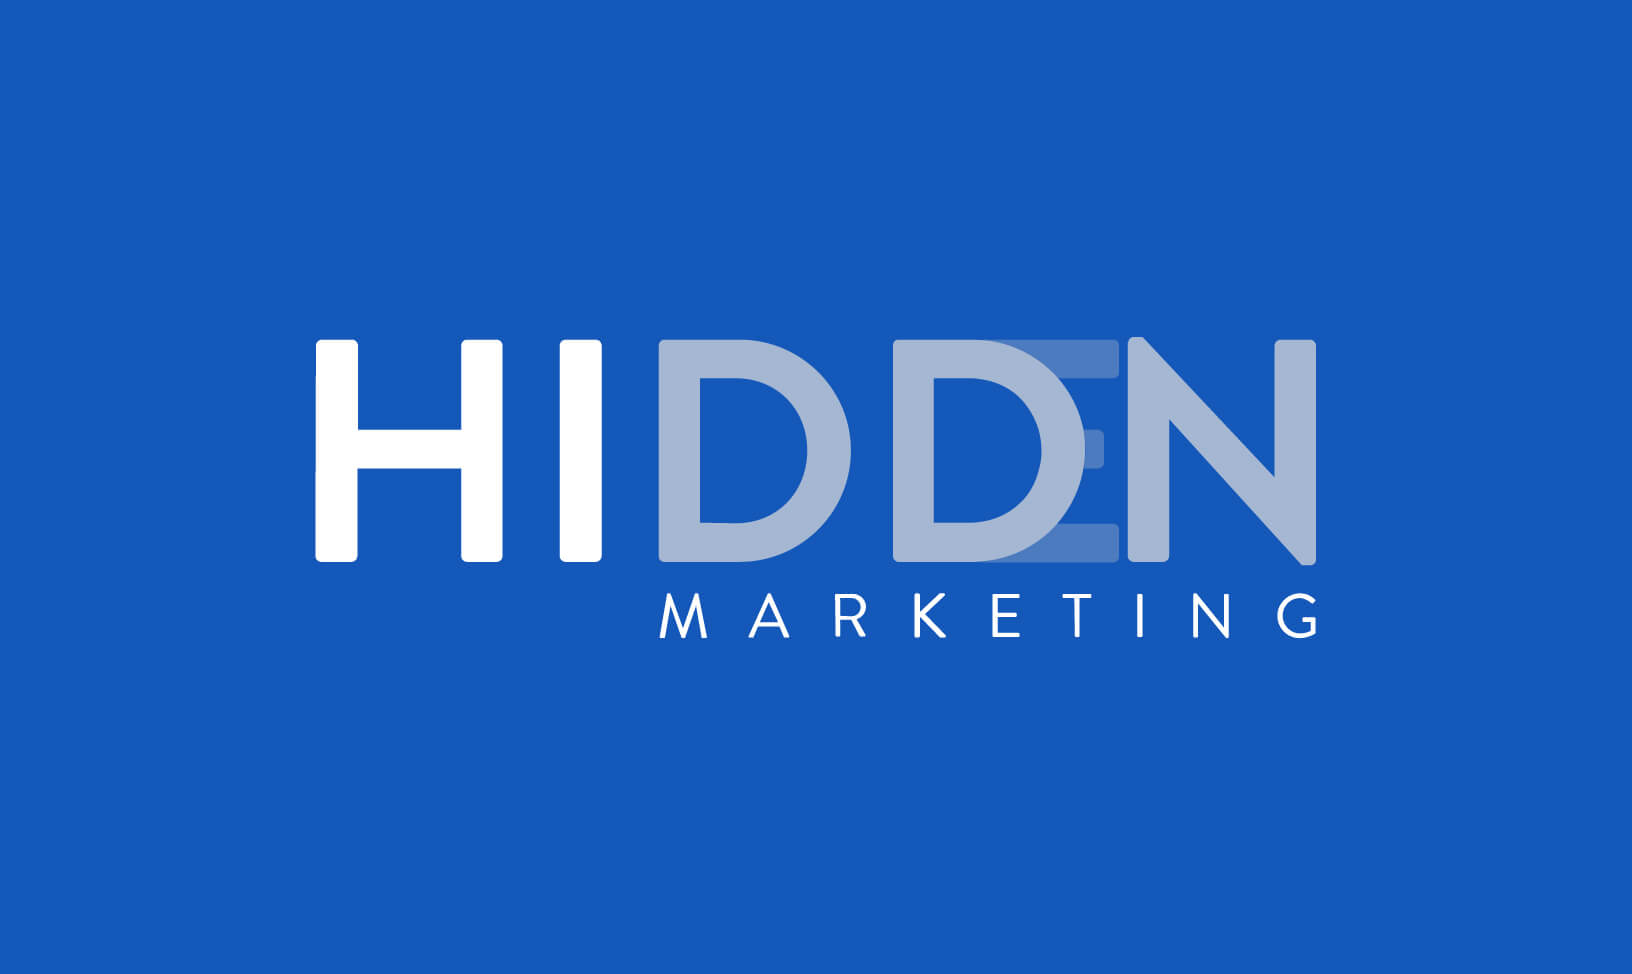 Hiddn Marketing Ltd